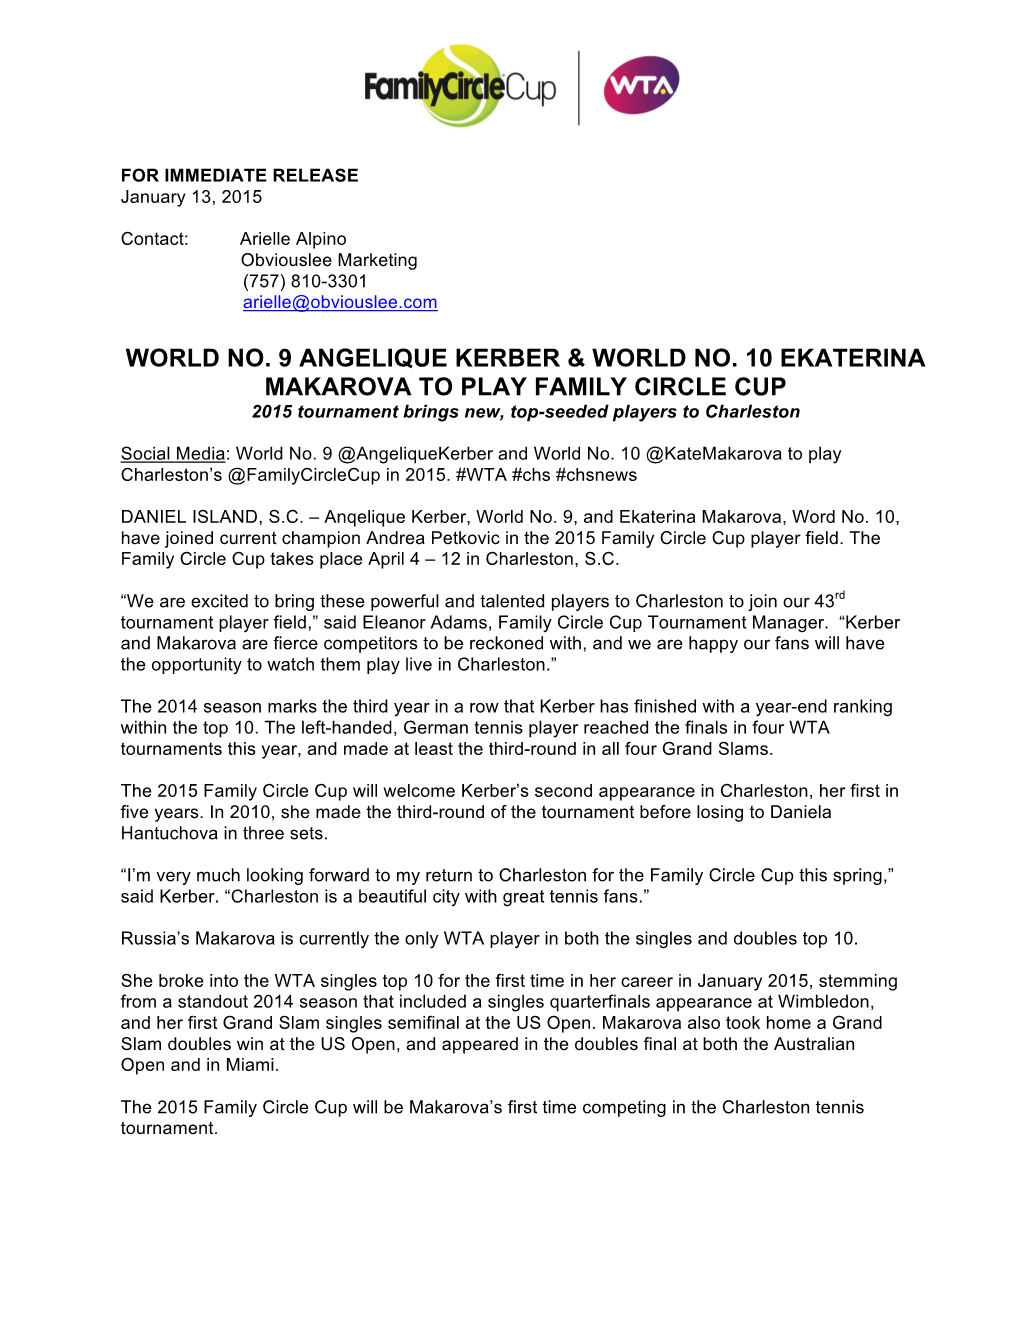 World No. 9 Angelique Kerber & World No